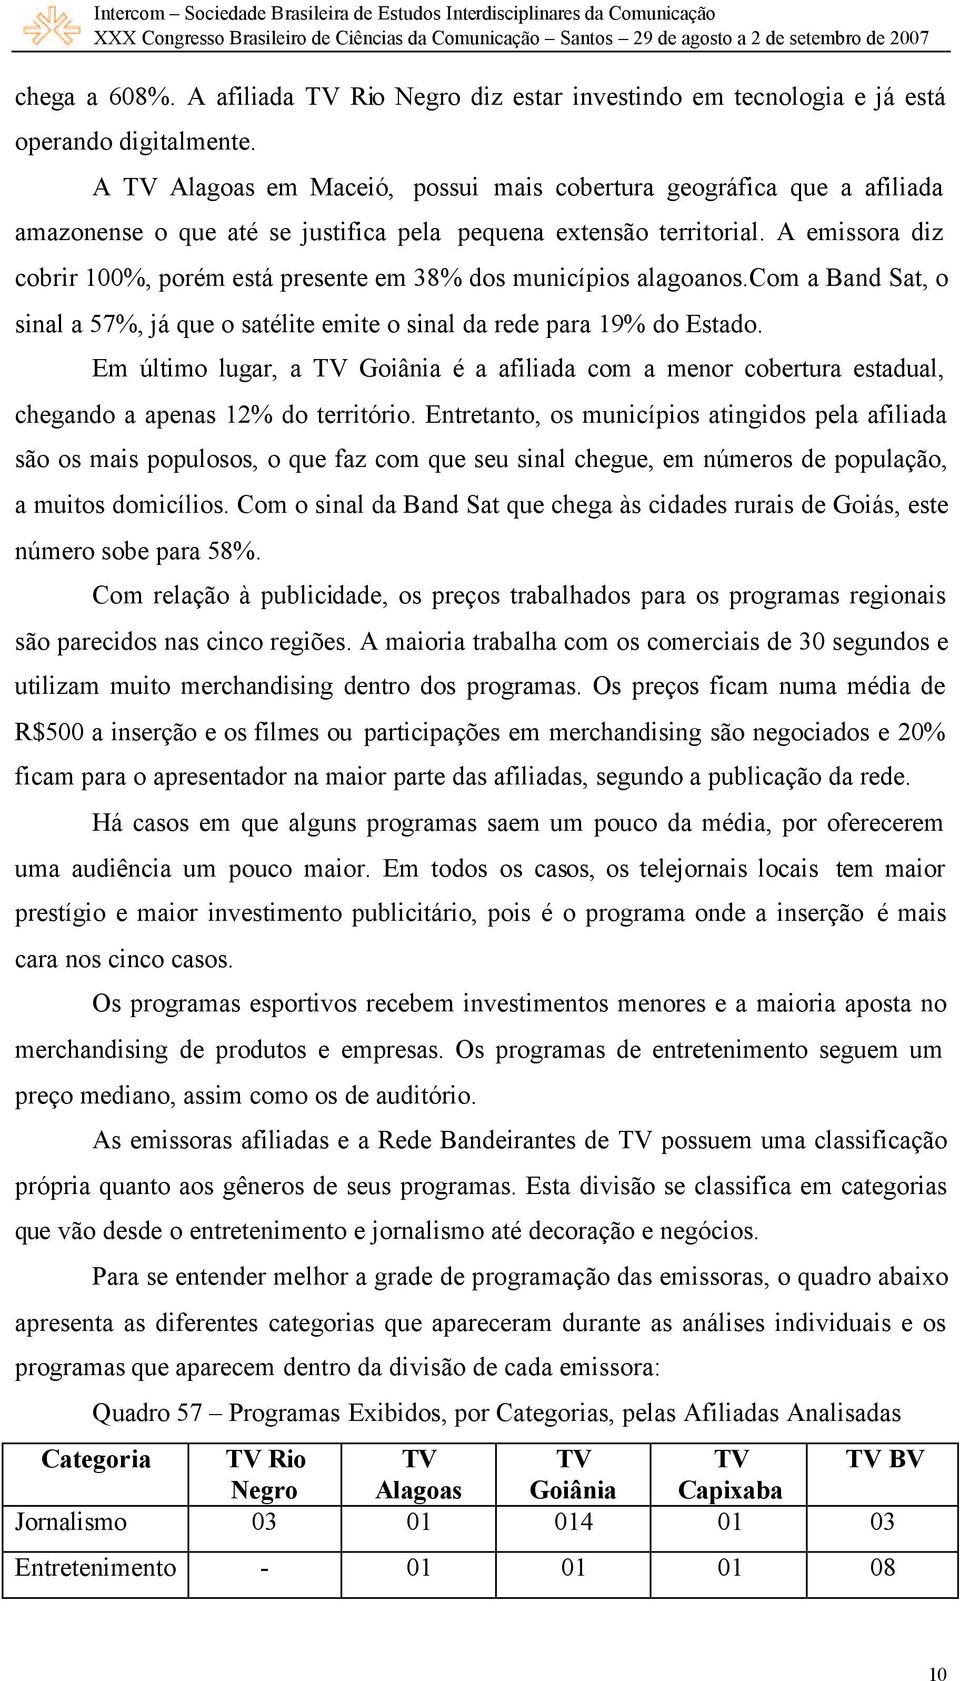 A emissora diz cobrir 100%, porém está presente em 38% dos municípios alagoanos.com a Band Sat, o sinal a 57%, já que o satélite emite o sinal da rede para 19% do Estado.